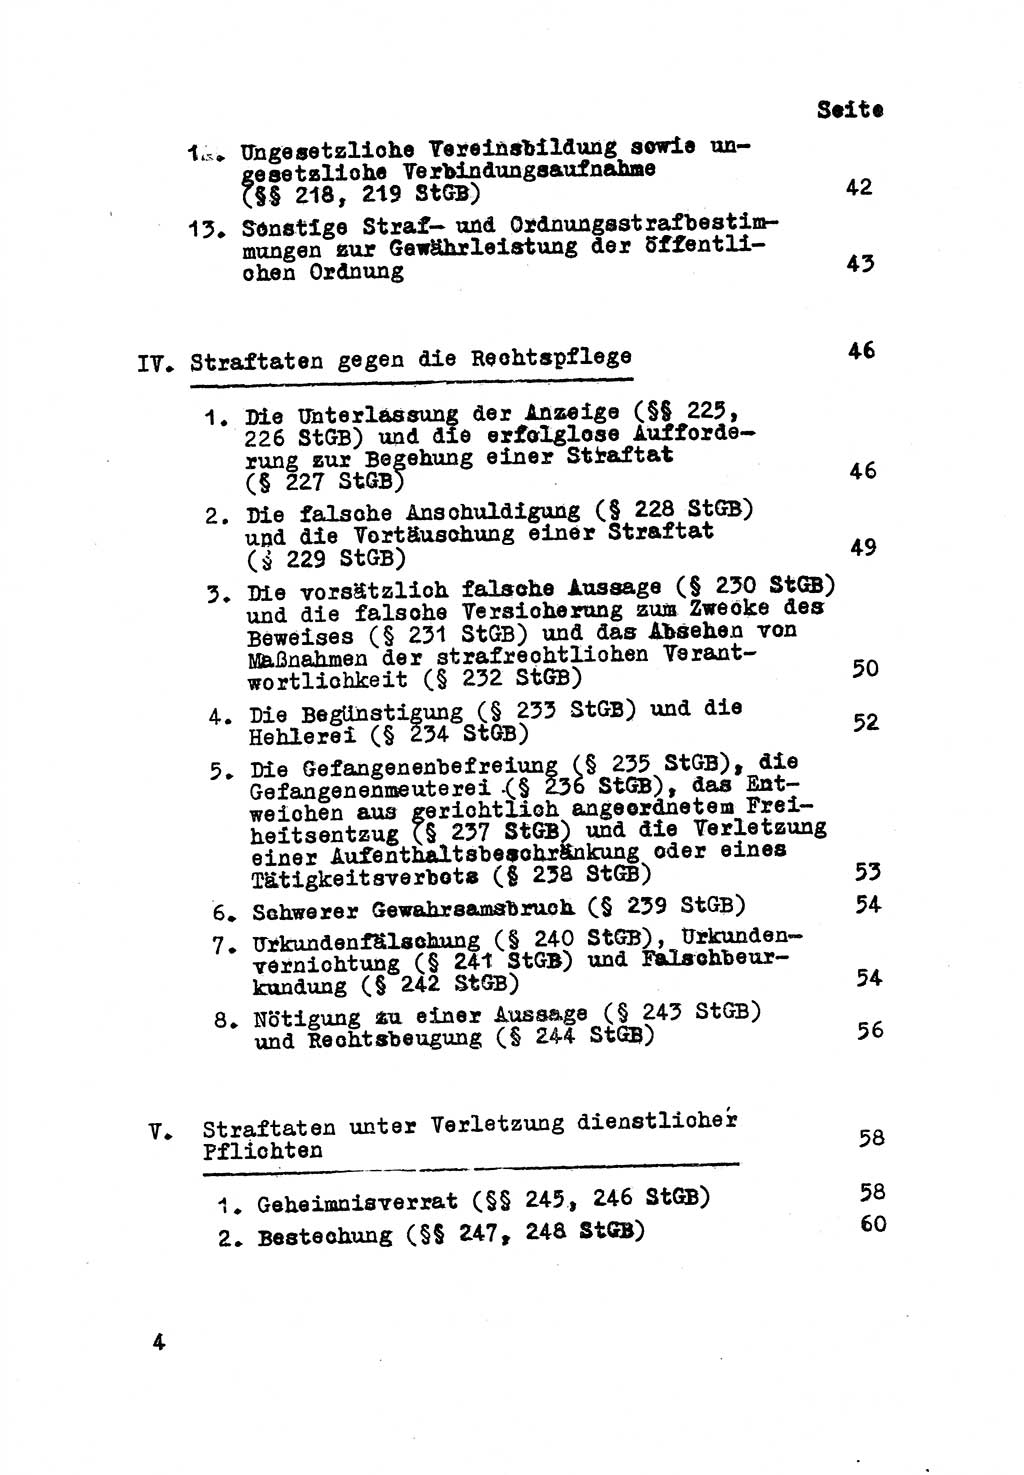 Strafrecht der DDR (Deutsche Demokratische Republik), Besonderer Teil, Lehrmaterial, Heft 8 1970, Seite 4 (Strafr. DDR BT Lehrmat. H. 8 1970, S. 4)